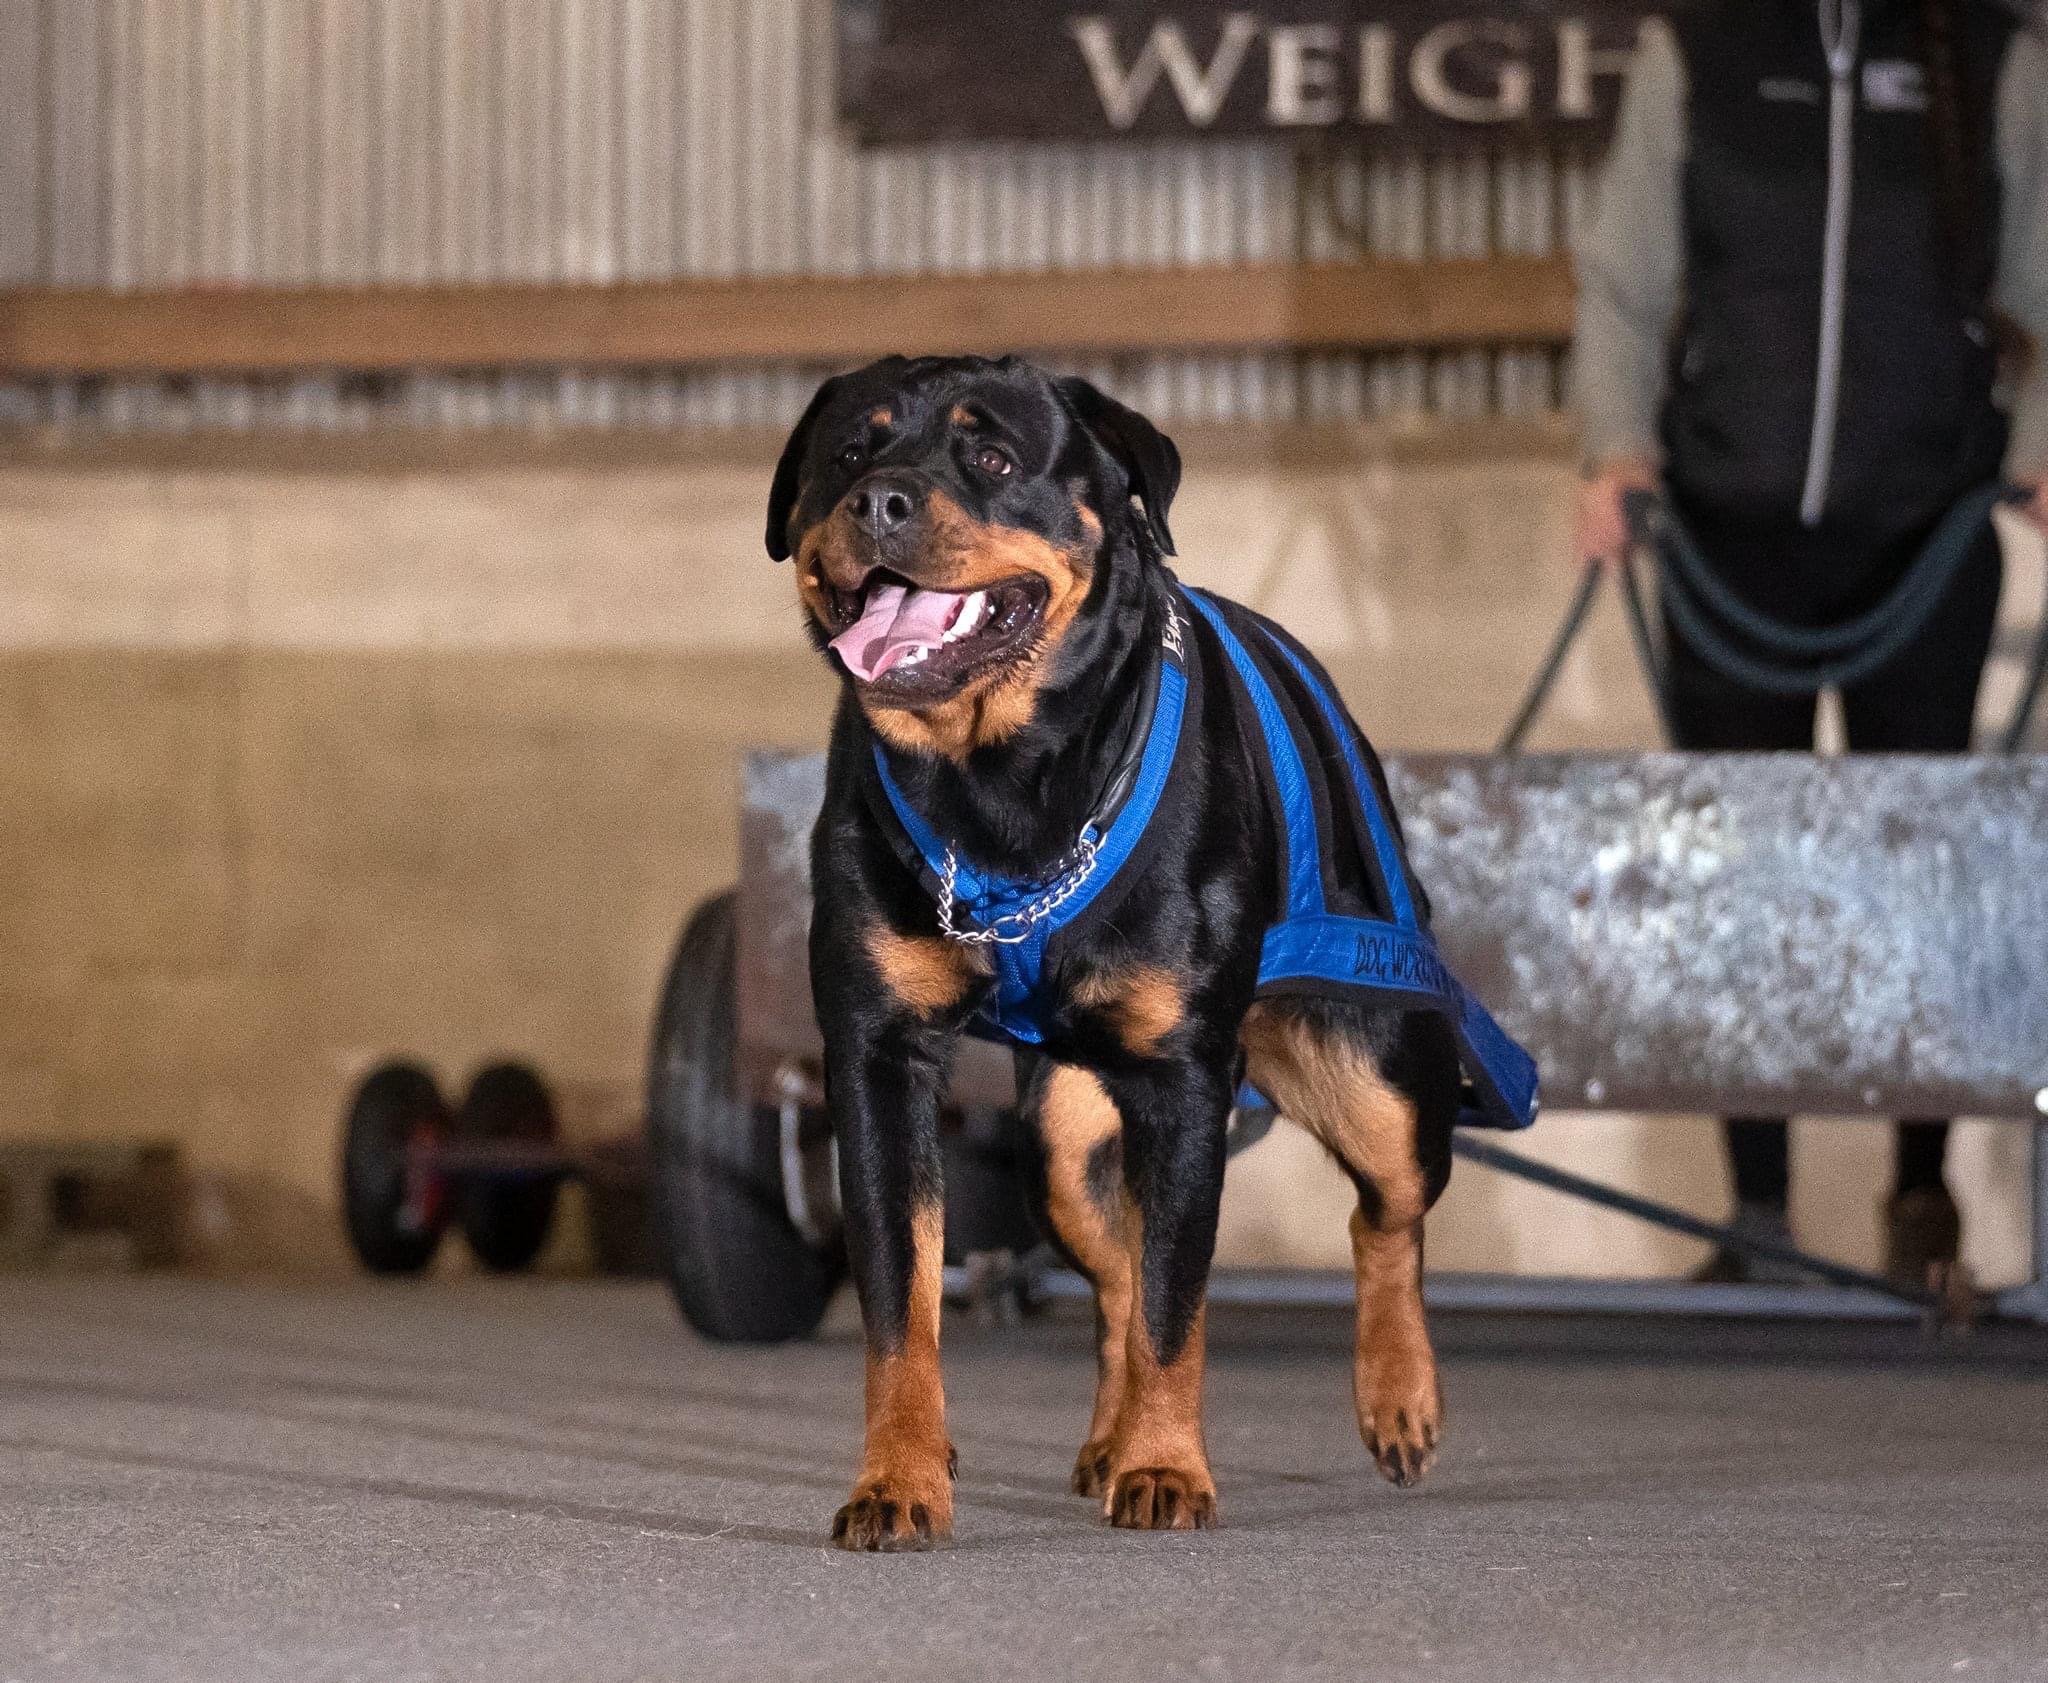 Dog Workout and Rehab - Hundetræning og genoptræning af hunde i Silkeborg